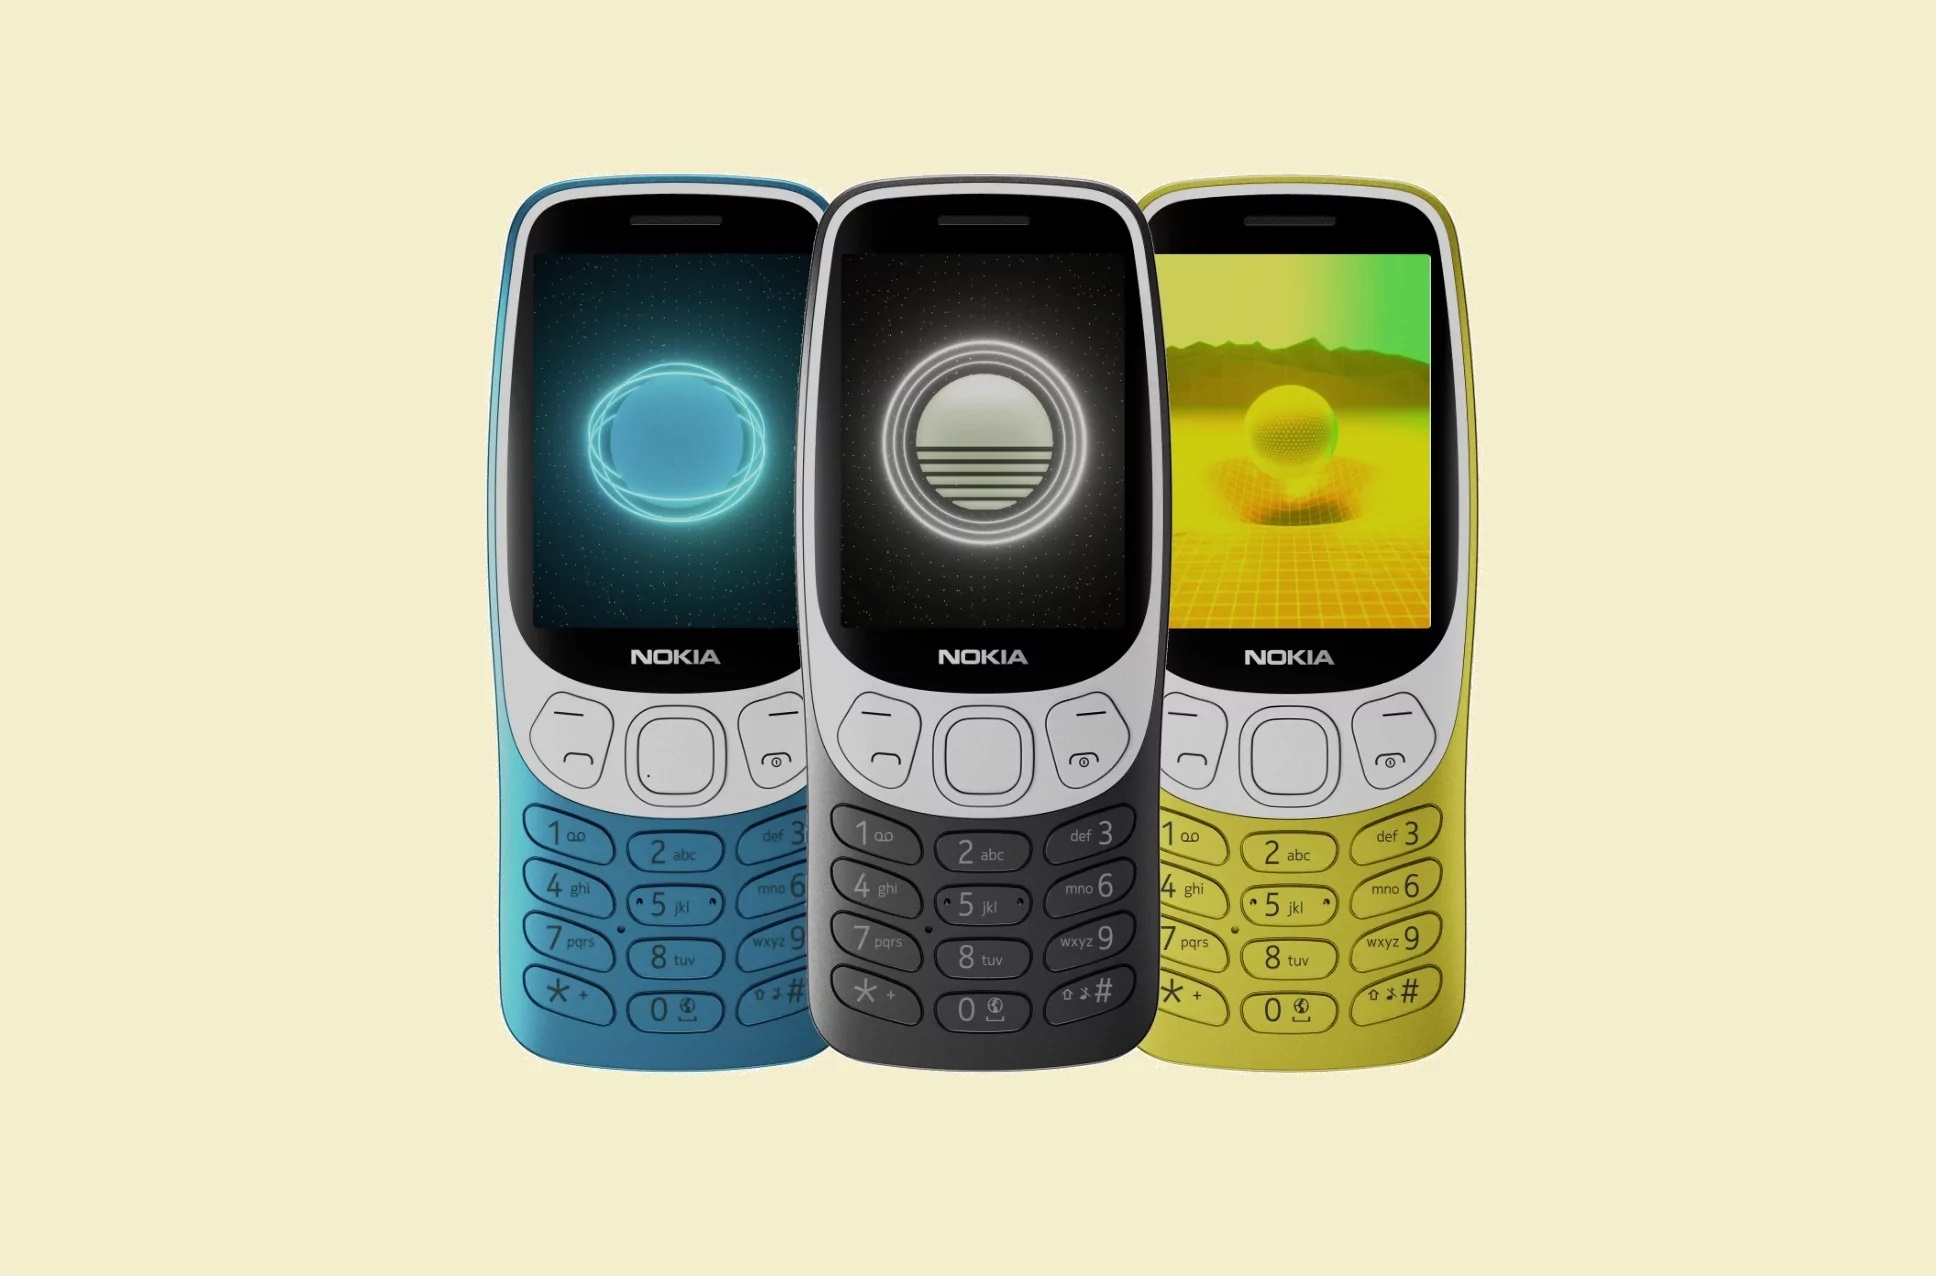 HMD is klaar om de Nokia 3210 nieuw leven in te blazen - de legendarische telefoon uit 1999